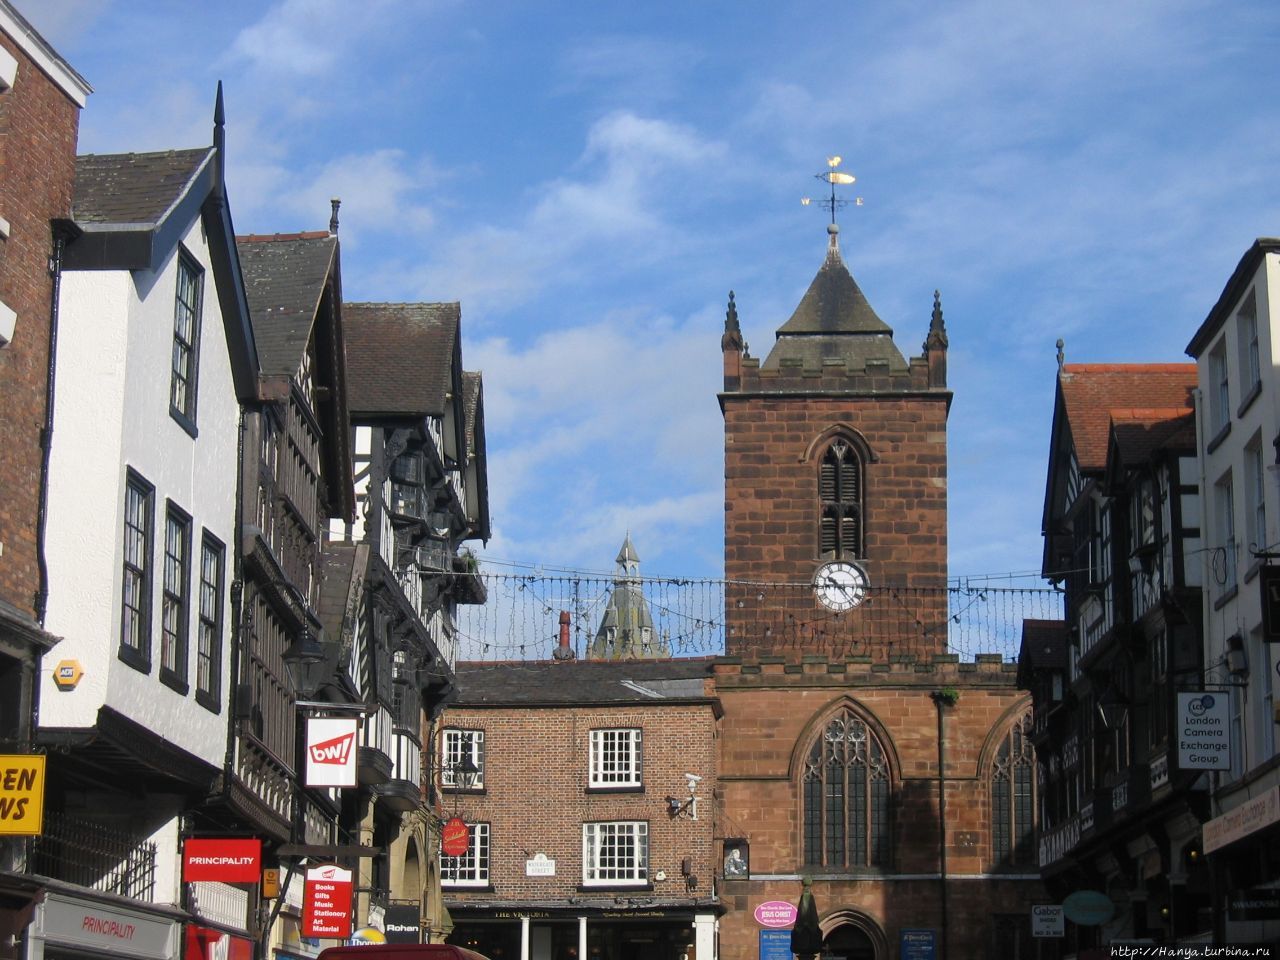 Бридж-стрит и церковь Св. Петра в Честере Честер, Великобритания